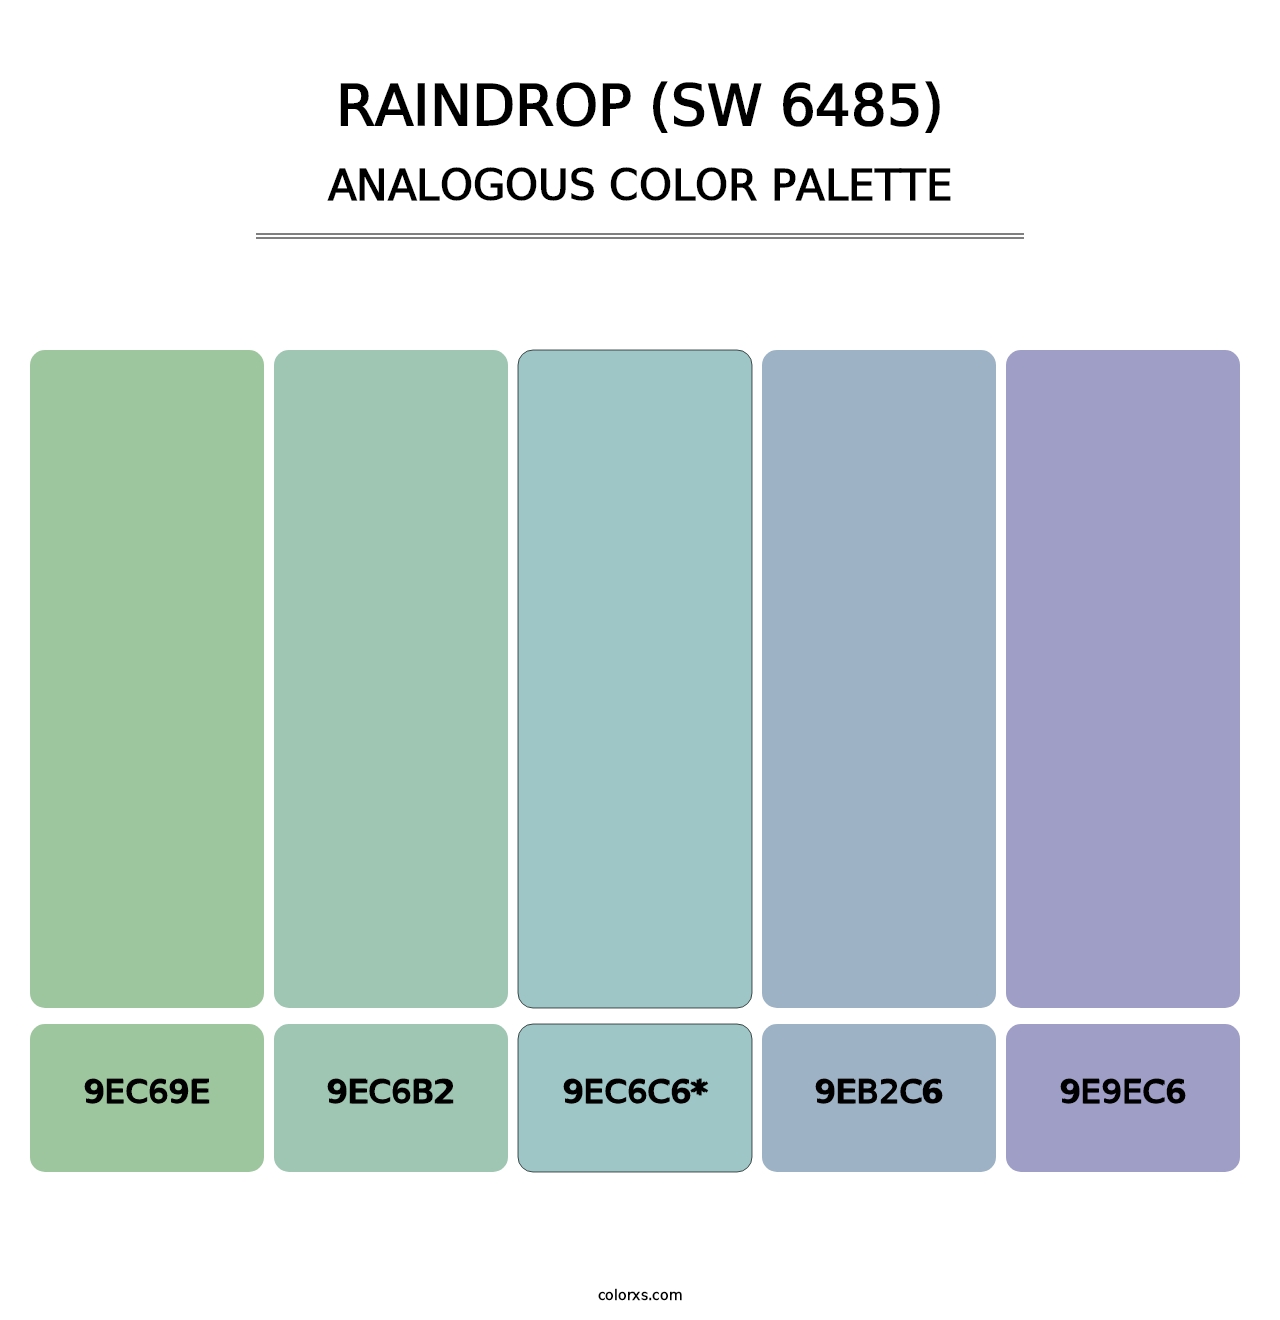 Raindrop (SW 6485) - Analogous Color Palette